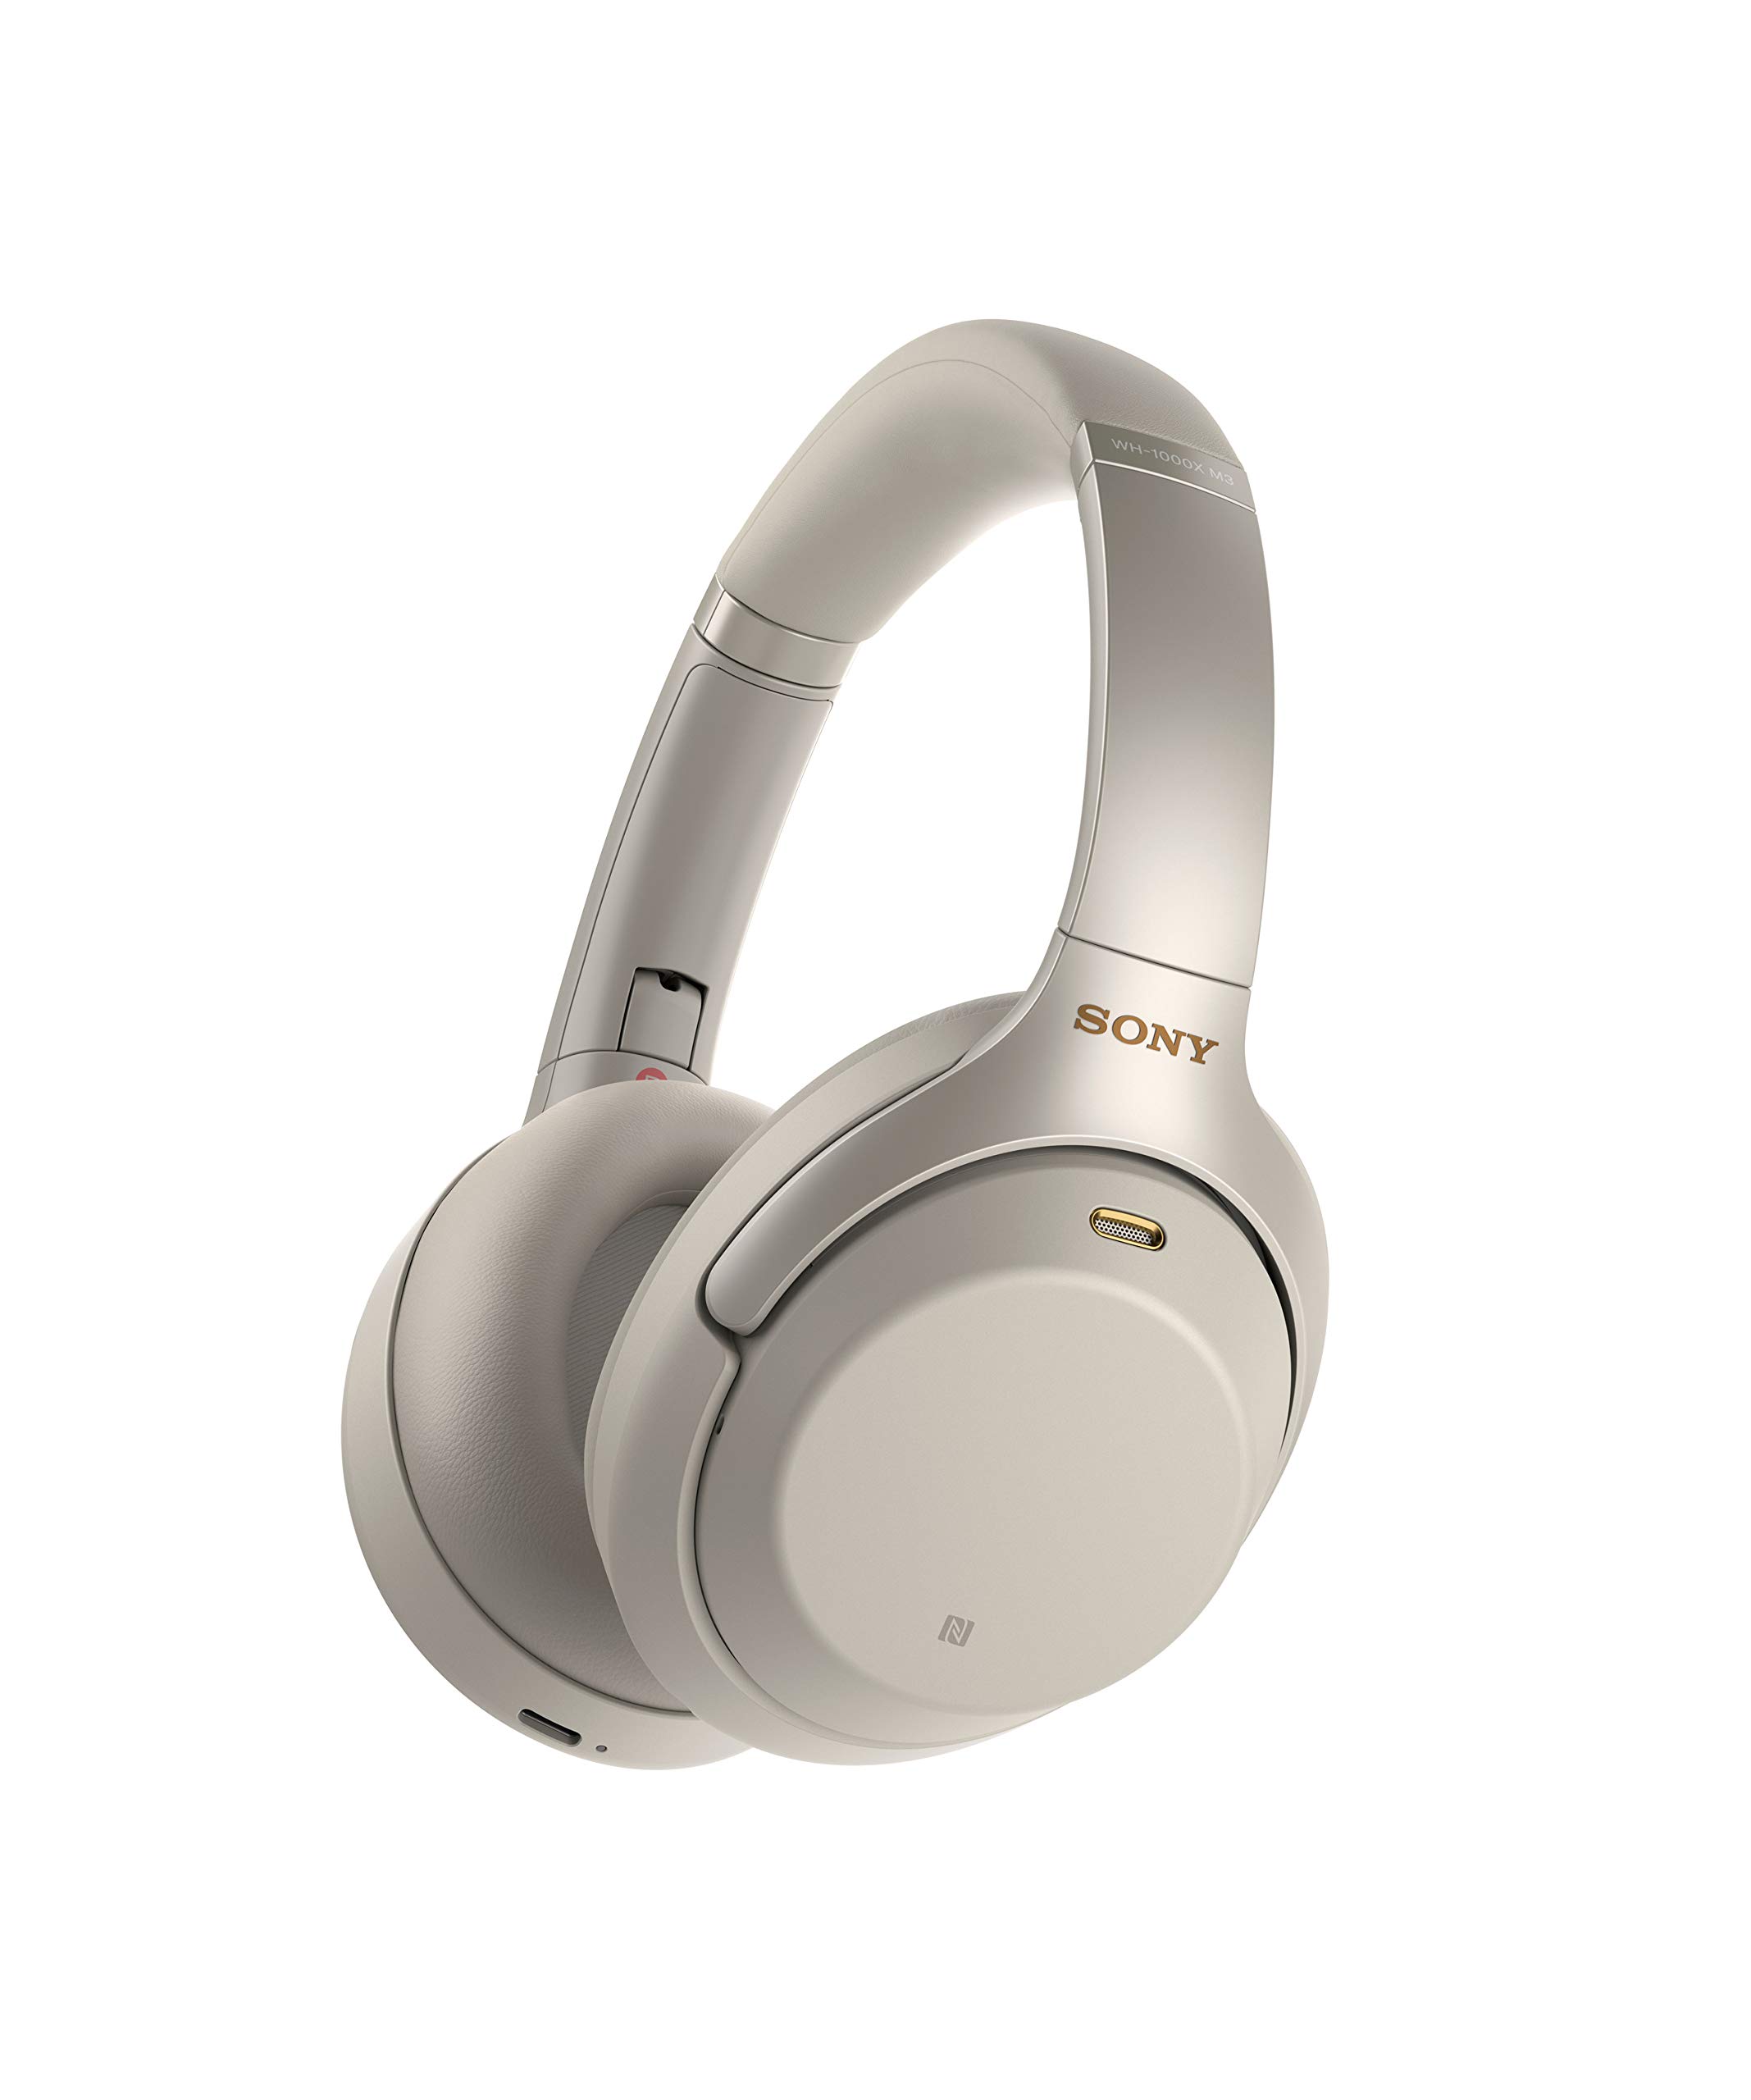 Sony Auriculares estéreo inalámbricos con cancelación de ruido WH-1000XM3 (Versión internacional/Orden del vendedor) (Plata)